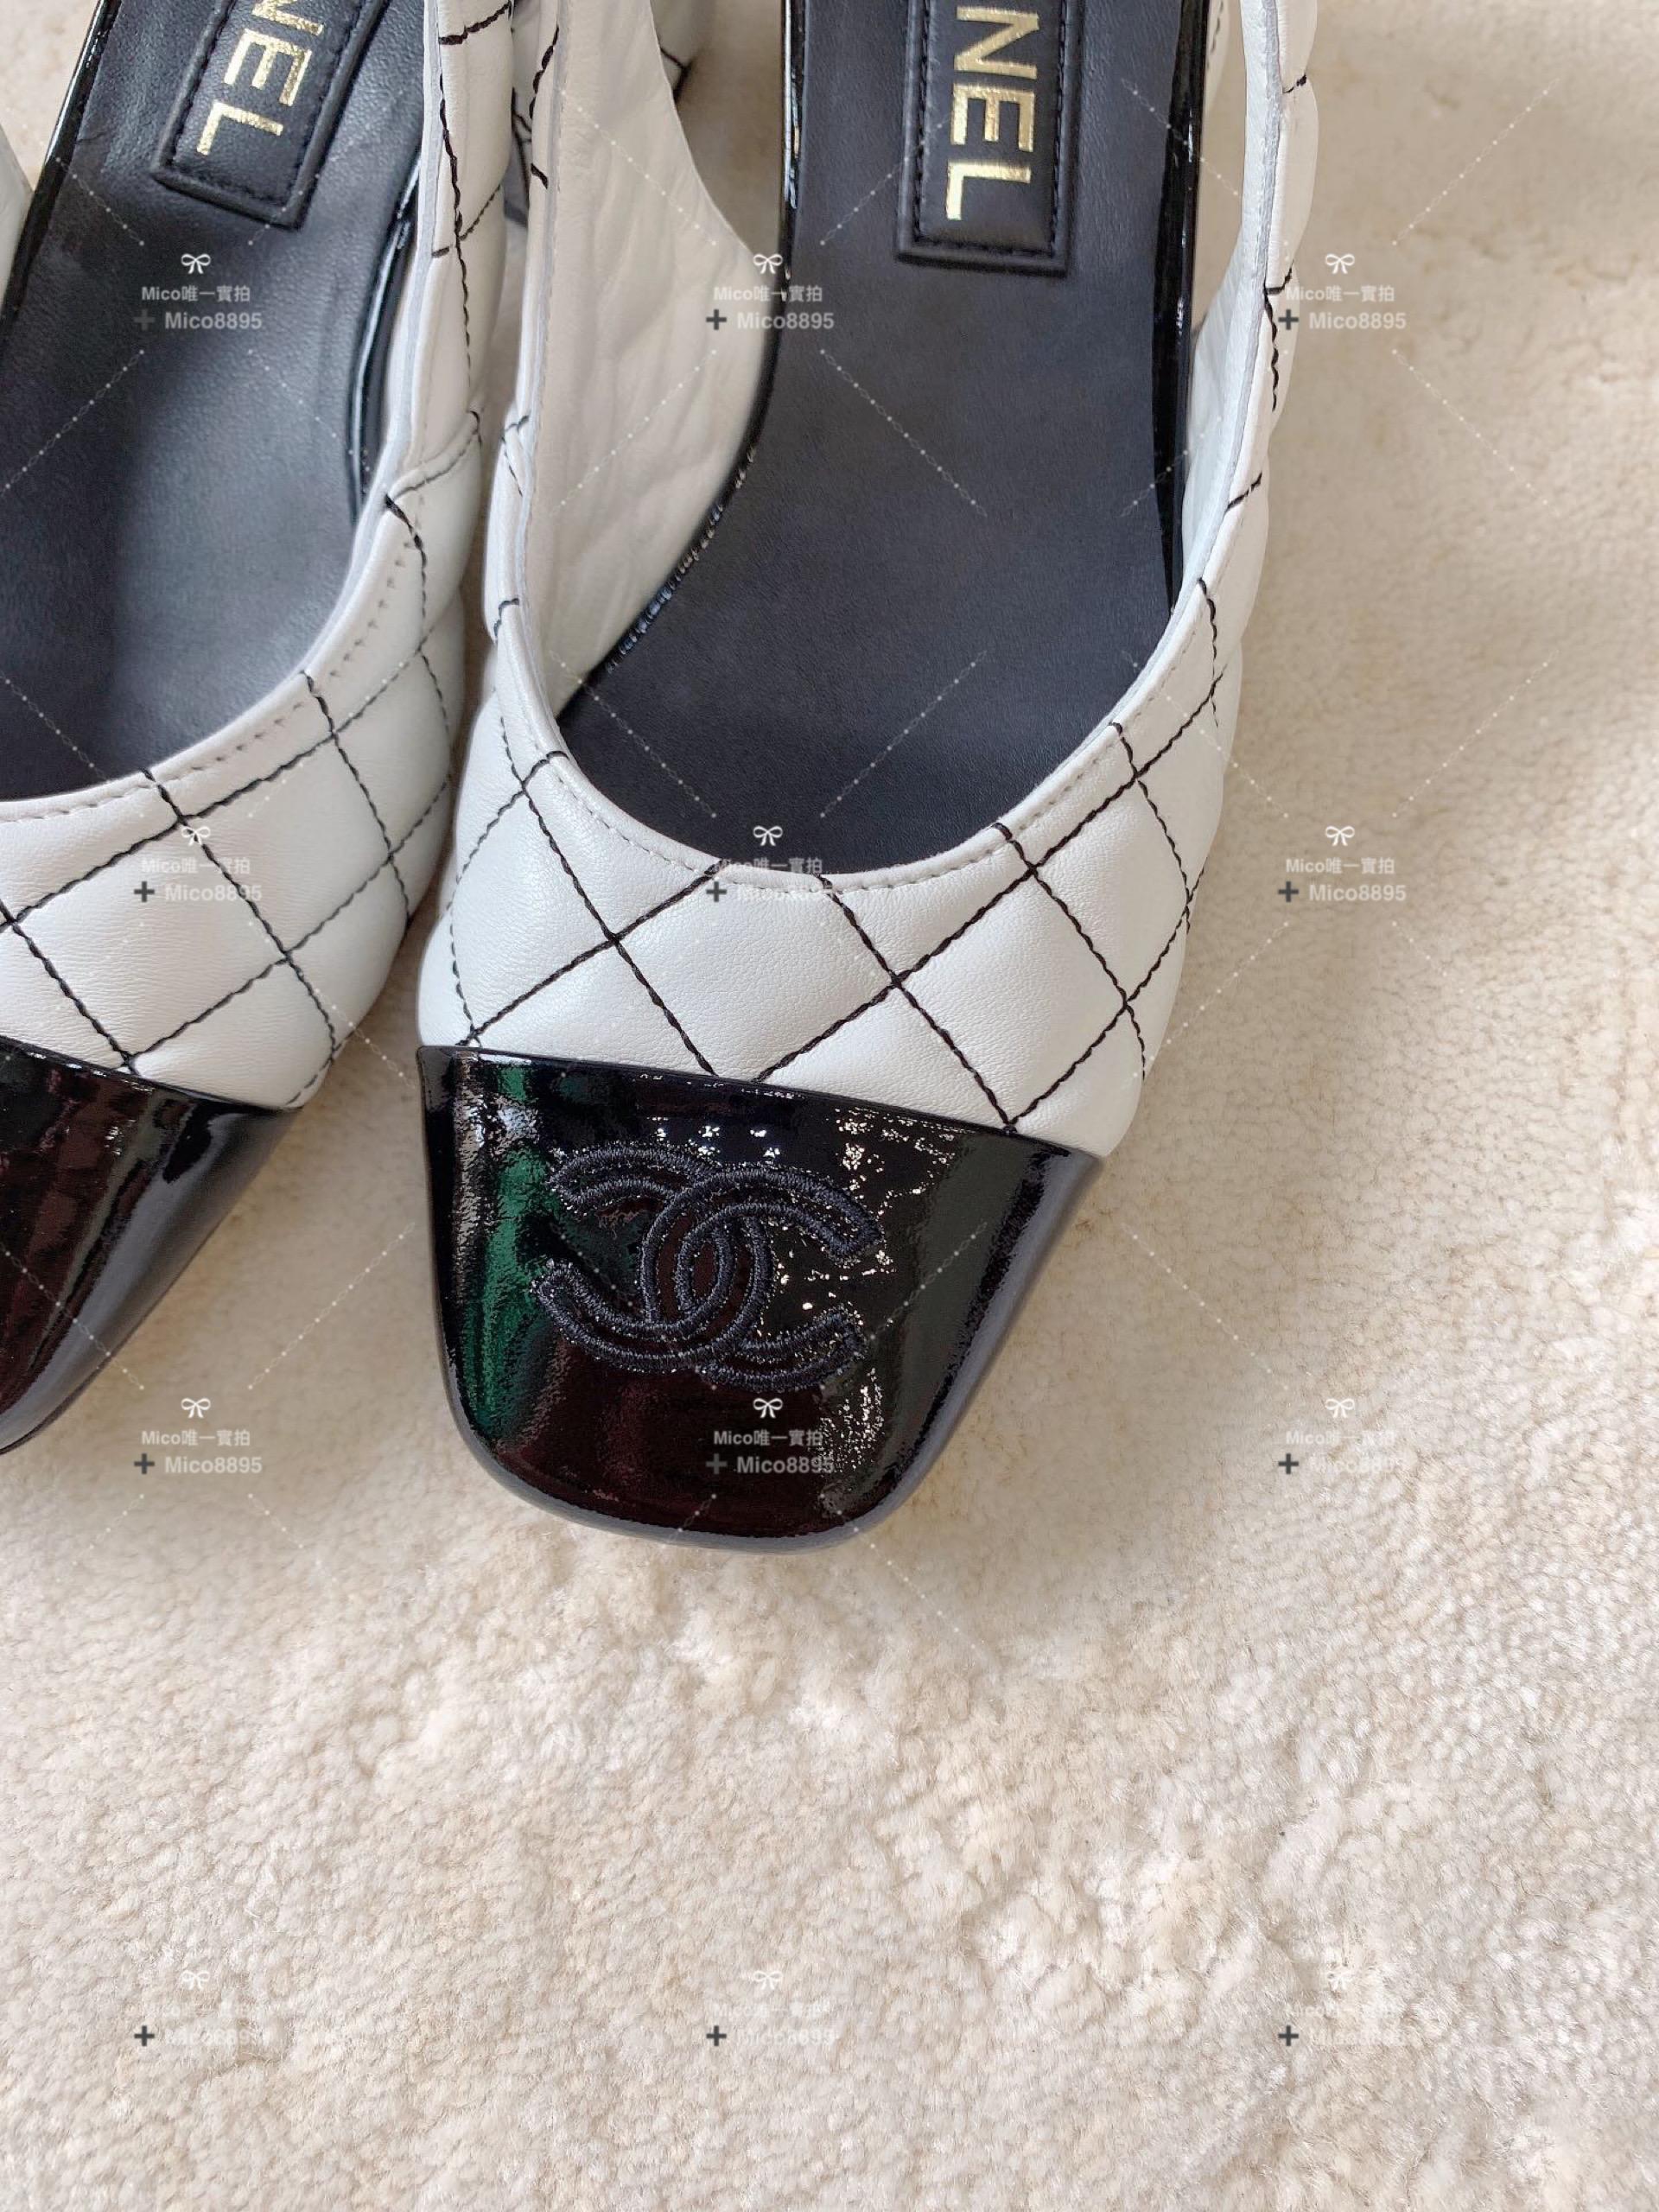 Chanel 菱格刺繡 真皮 瑪莉珍跟鞋 涼鞋 3.5cm跟高